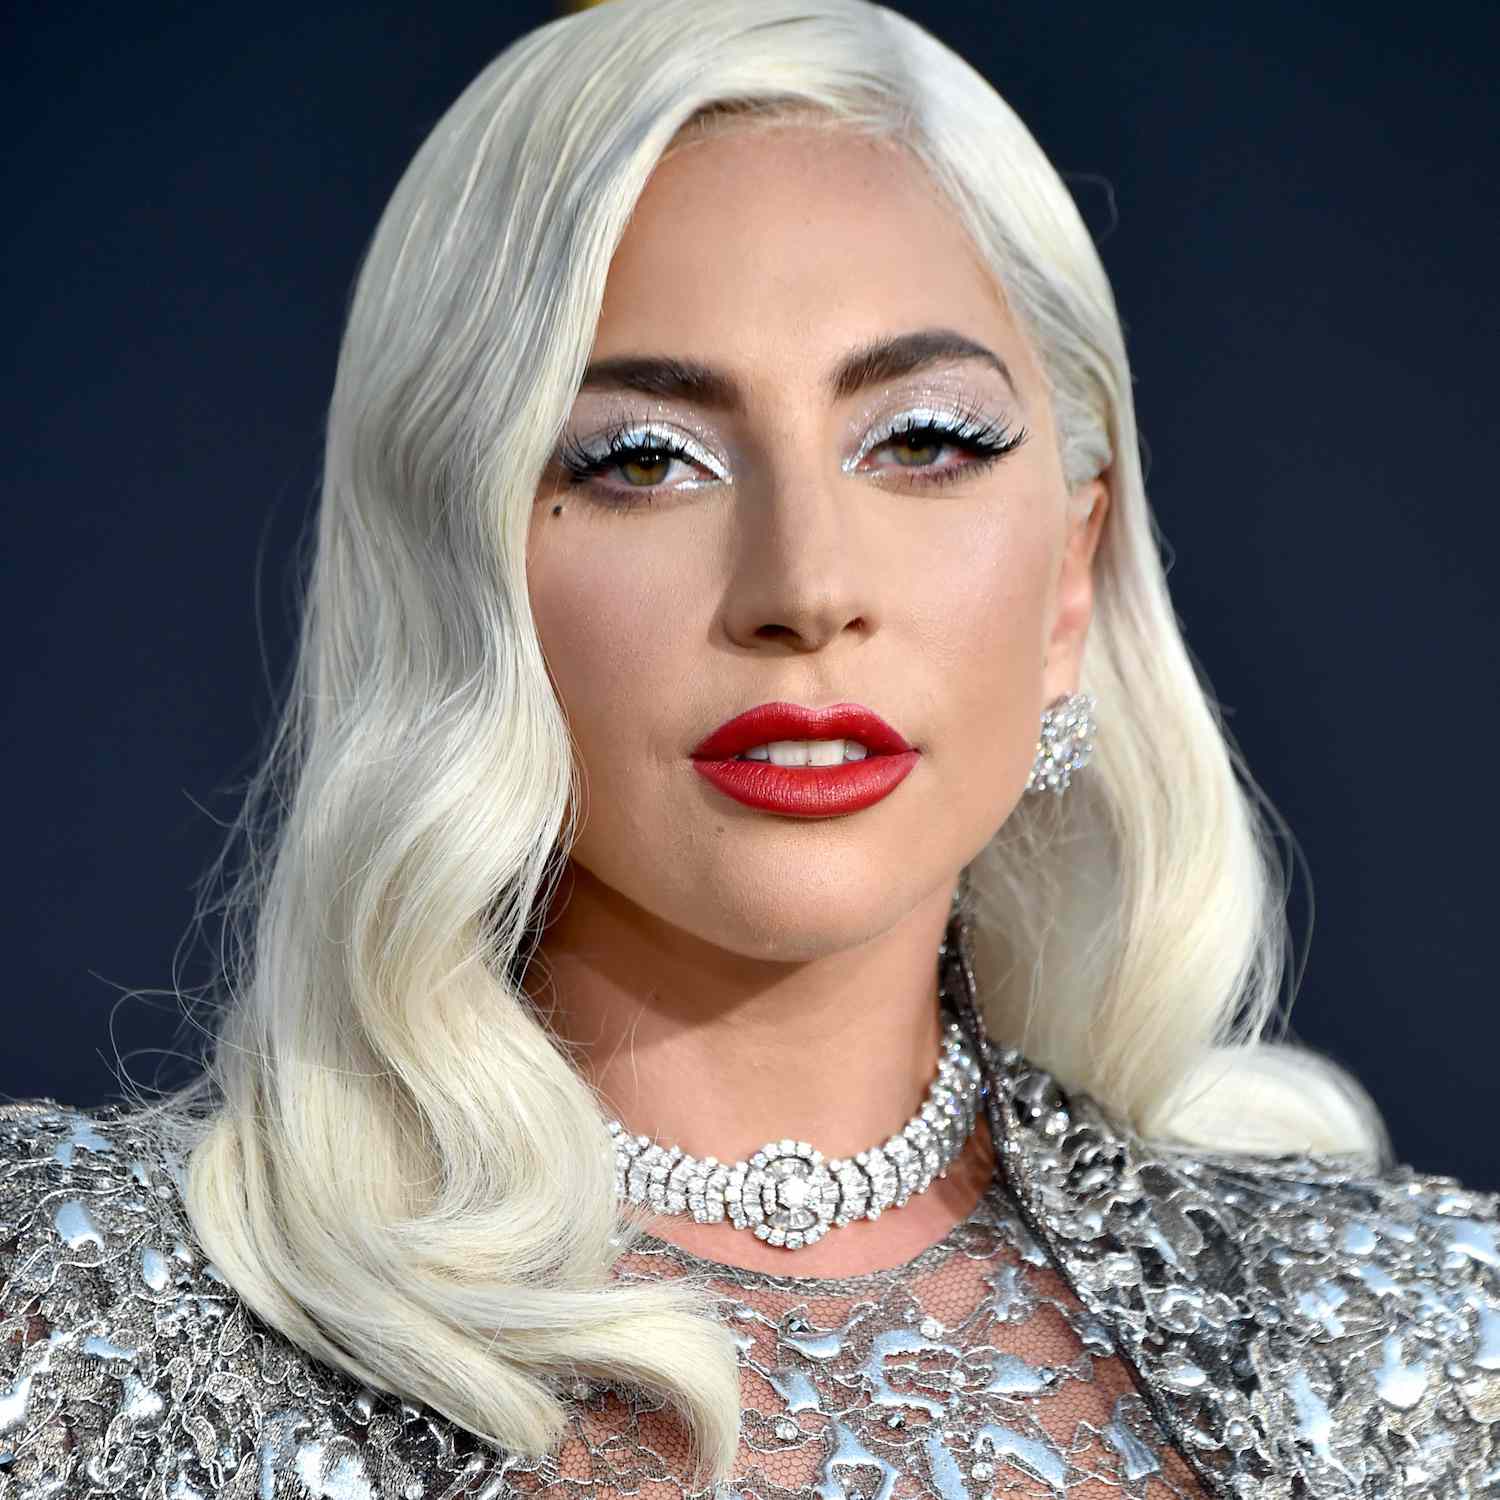 Lady Gaga com sombra branca com glitter prateado, batom vermelho, cosméticos e maquiagem platinada